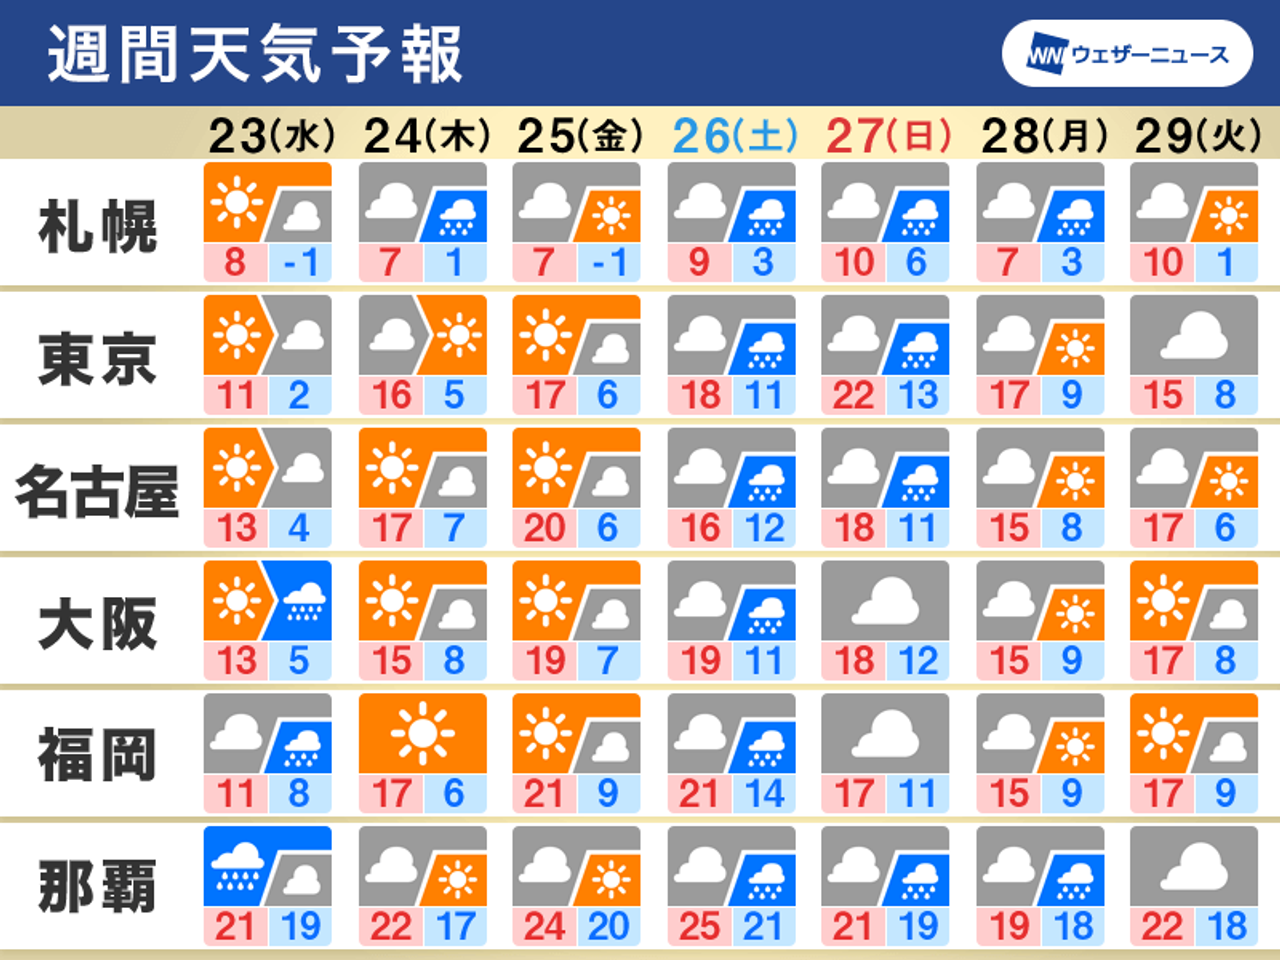 2022/03/22 06:05公開の週間天気予報